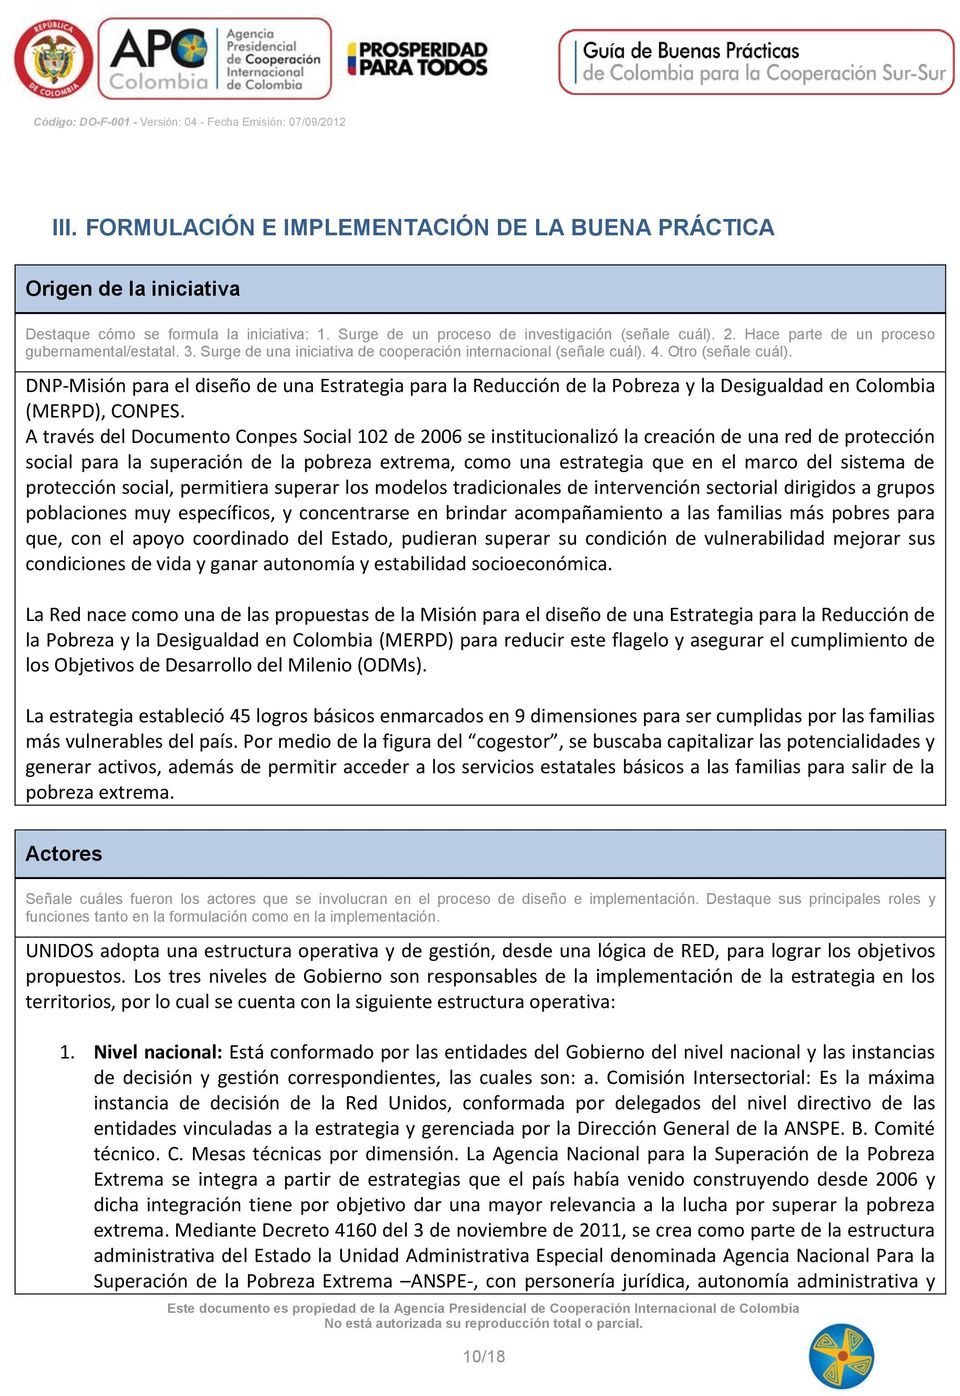 DNP-Misión para el diseño de una Estrategia para la Reducción de la Pobreza y la Desigualdad en Colombia (MERPD), CONPES.